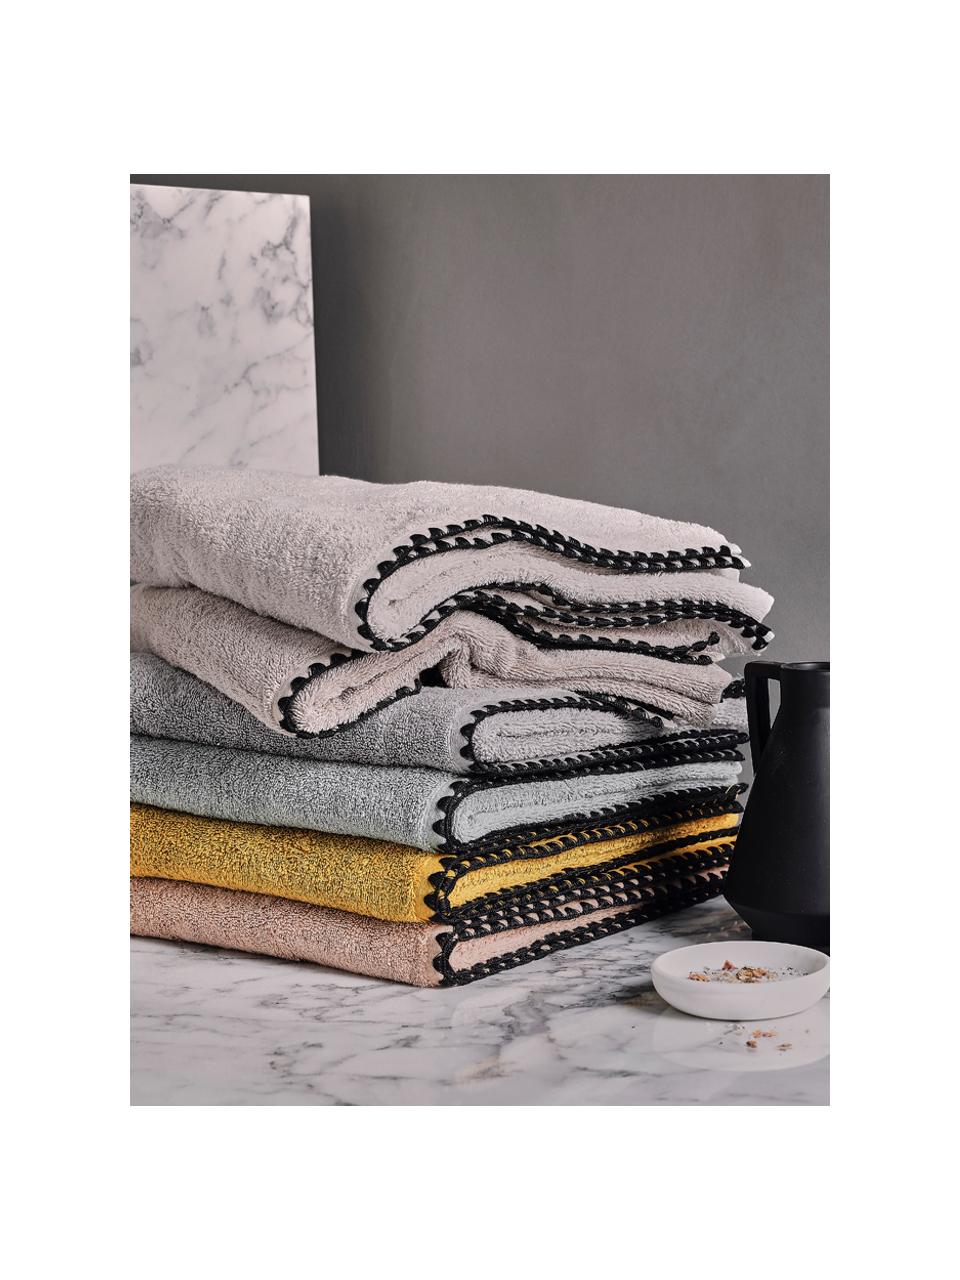 Handtuch Issey in verschiedenen Größen, mit bestickter Borte, Grau, Schwarz, Handtuch, B 50 x L 100 cm, 2 Stück